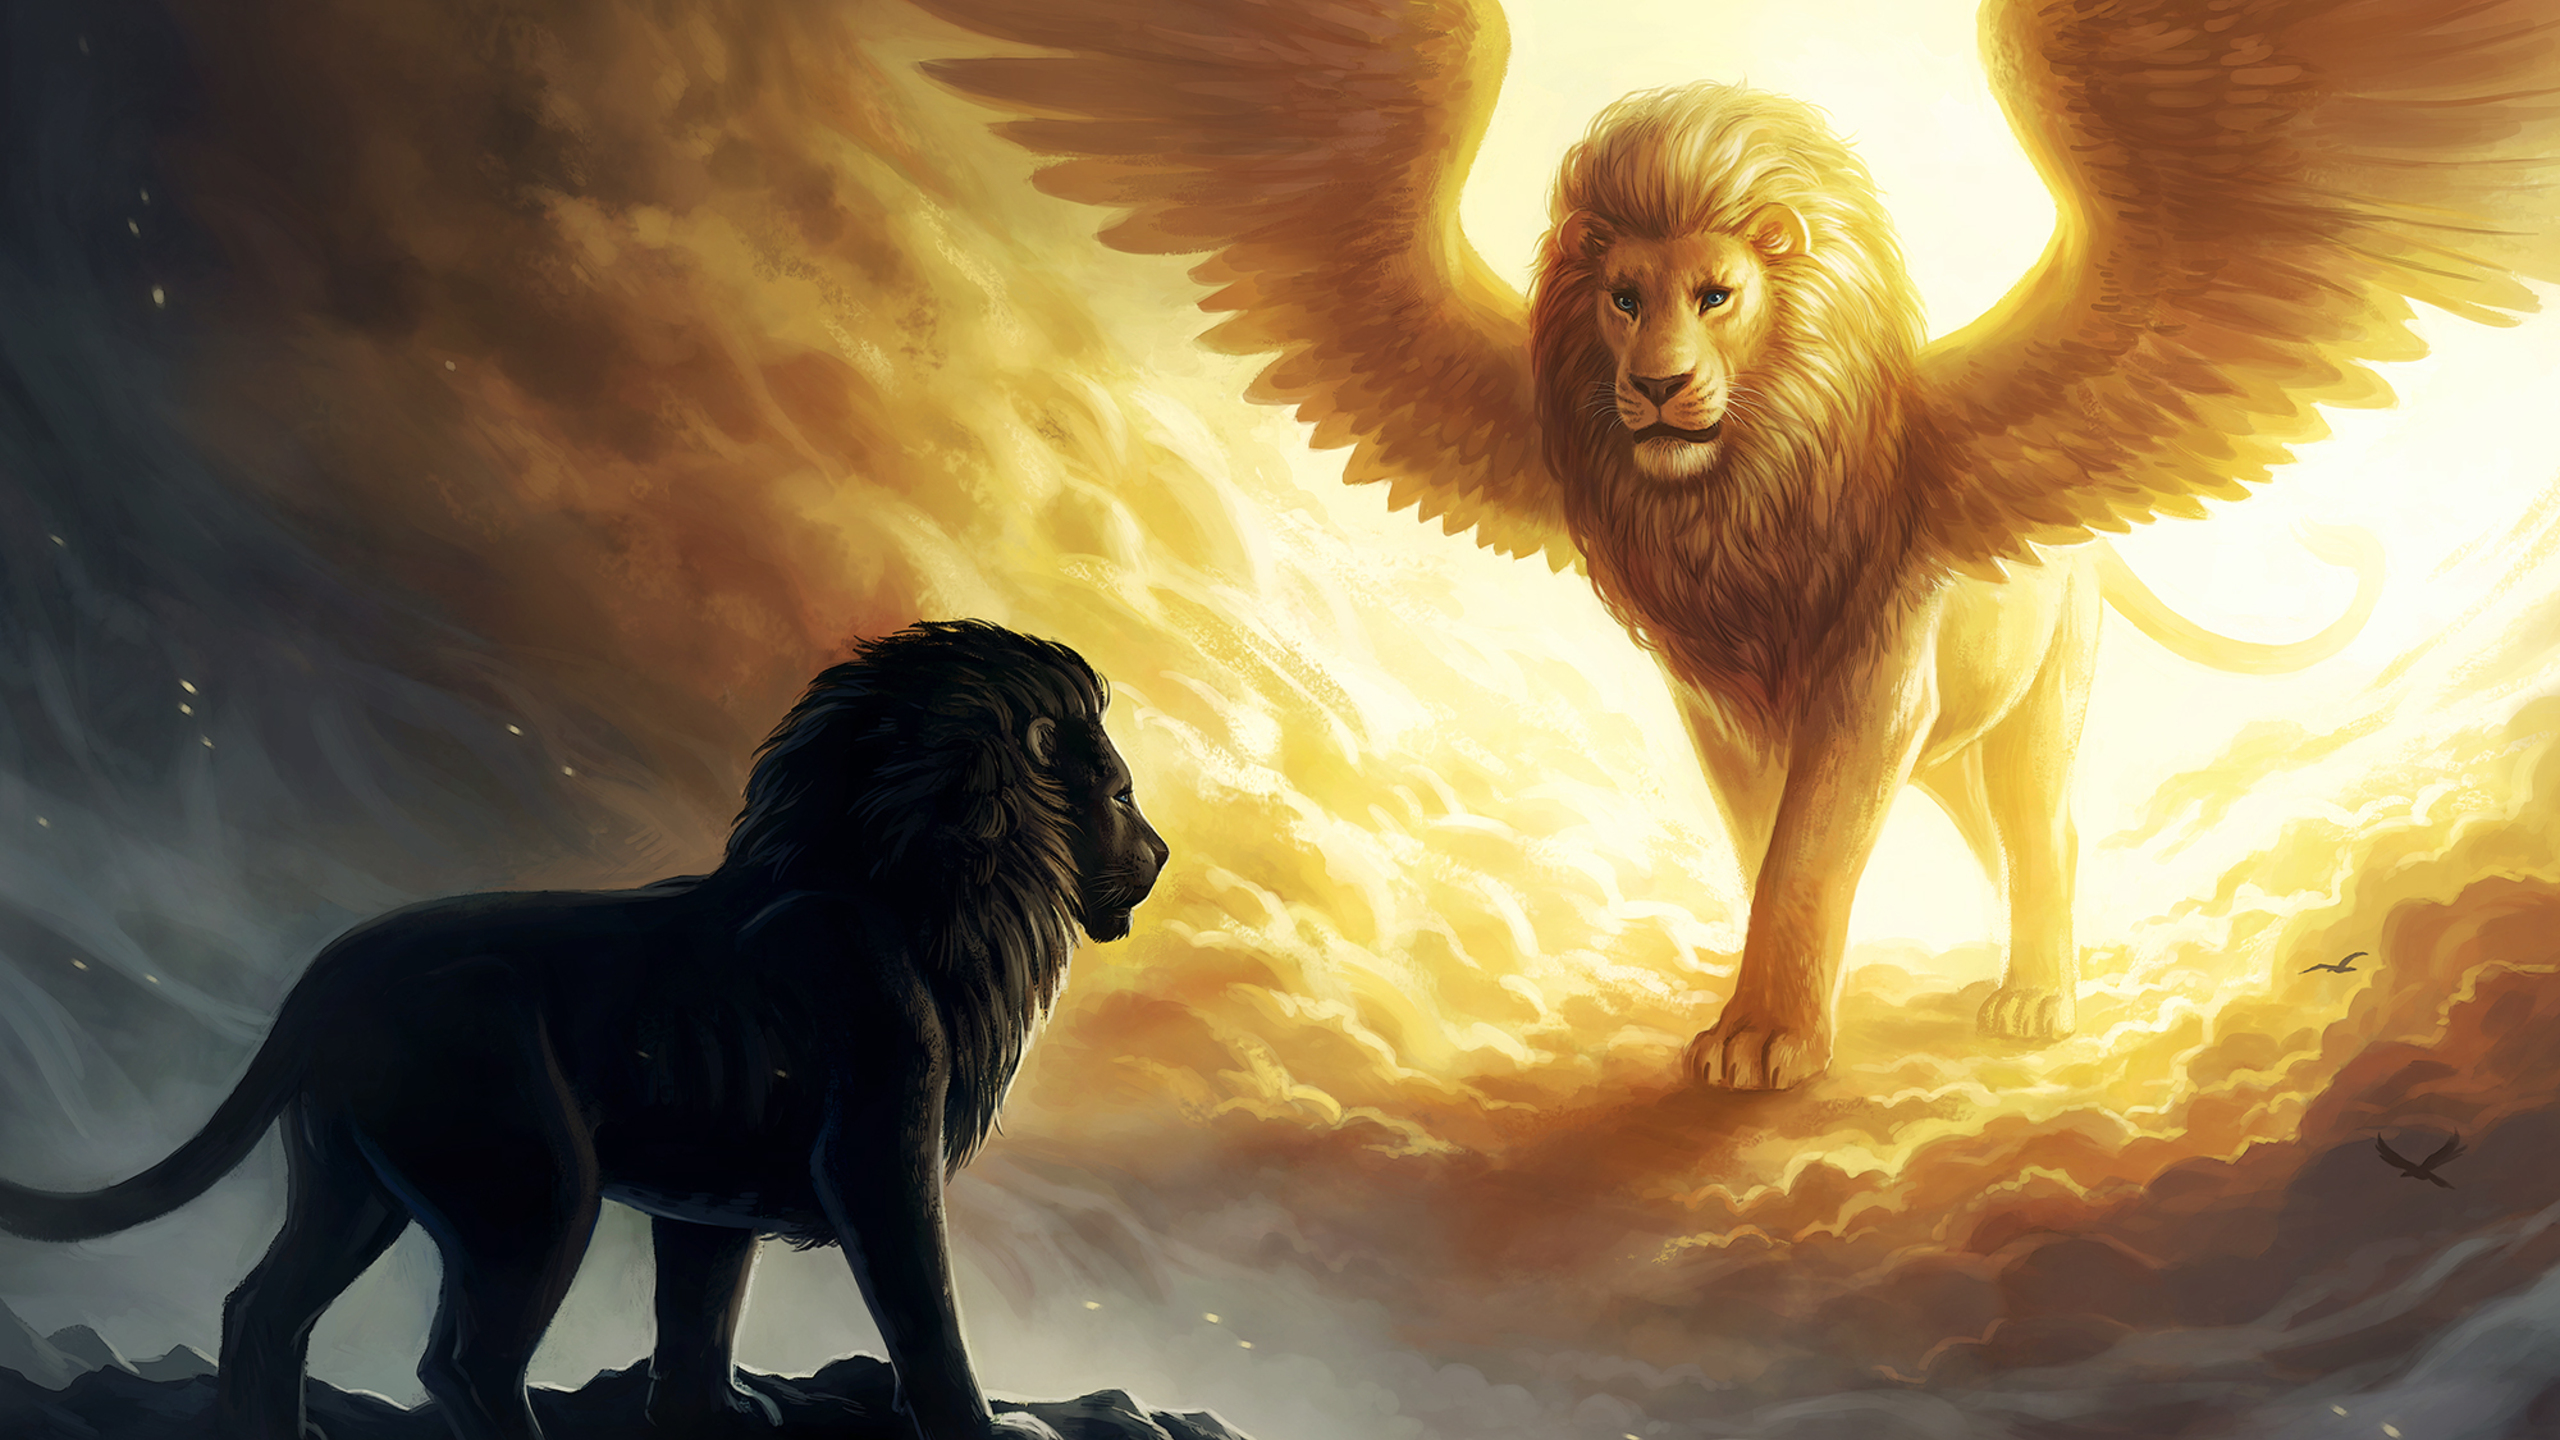 lion-king-spiritual-dark-fantasy-1n.jpg. 